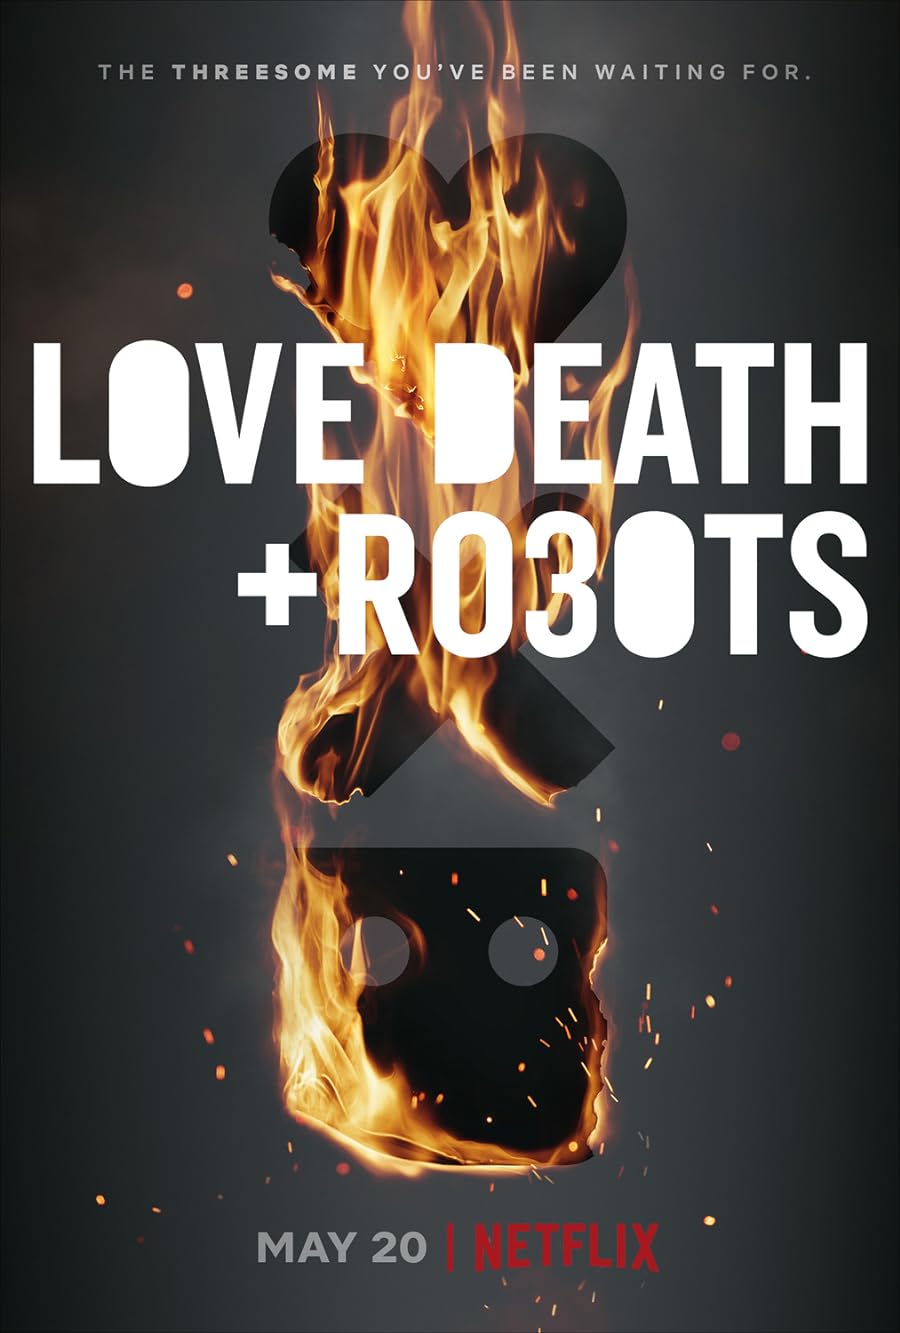 دانلود سریال Love, Death & Robots 2019 دوبله فارسی بدون سانسور